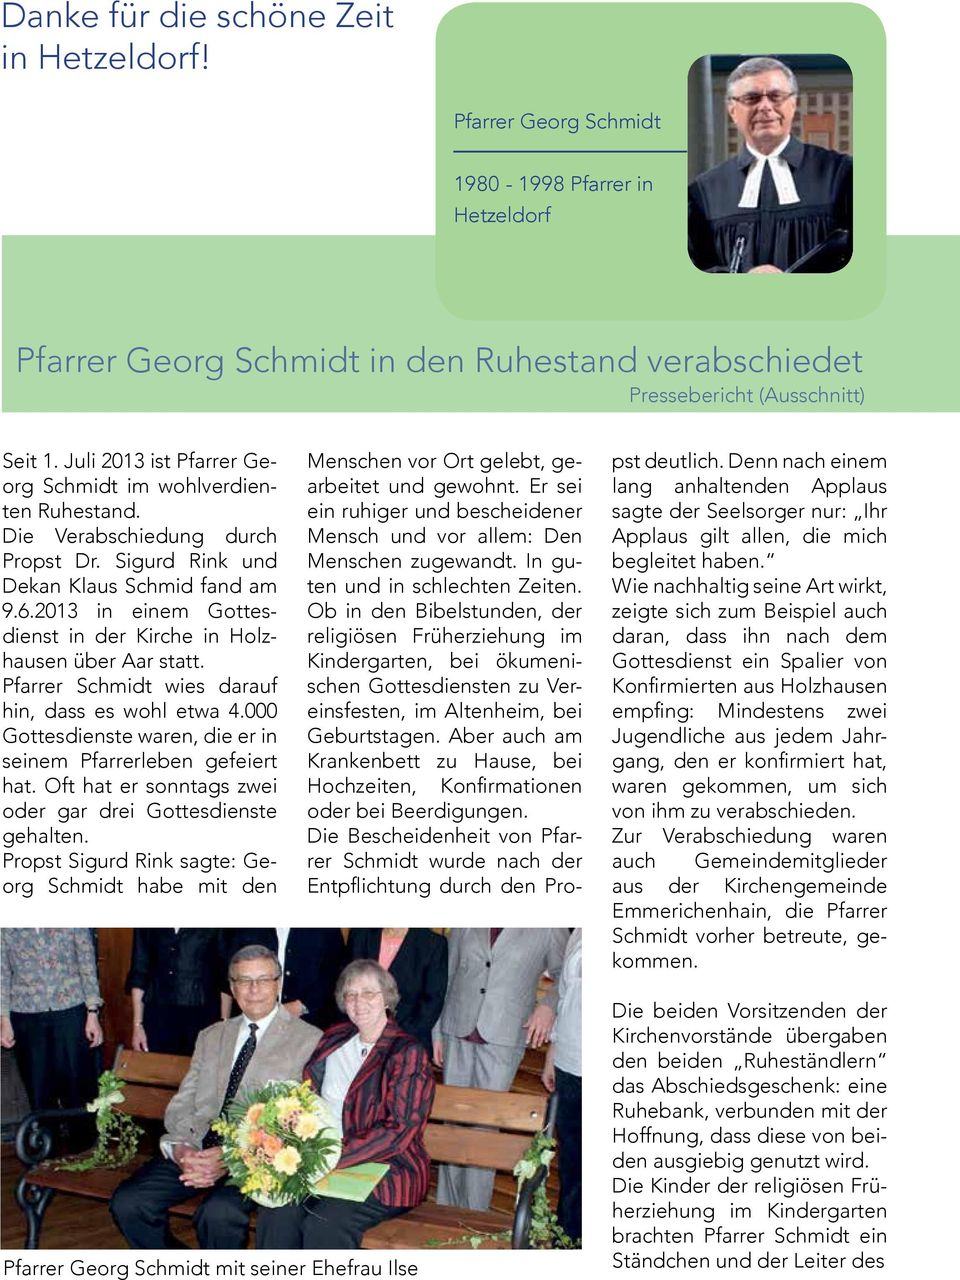 2013 in einem Gottesdienst in der Kirche in Holzhausen über Aar statt. Pfarrer Schmidt wies darauf hin, dass es wohl etwa 4.000 Gottesdienste waren, die er in seinem Pfarrerleben gefeiert hat.